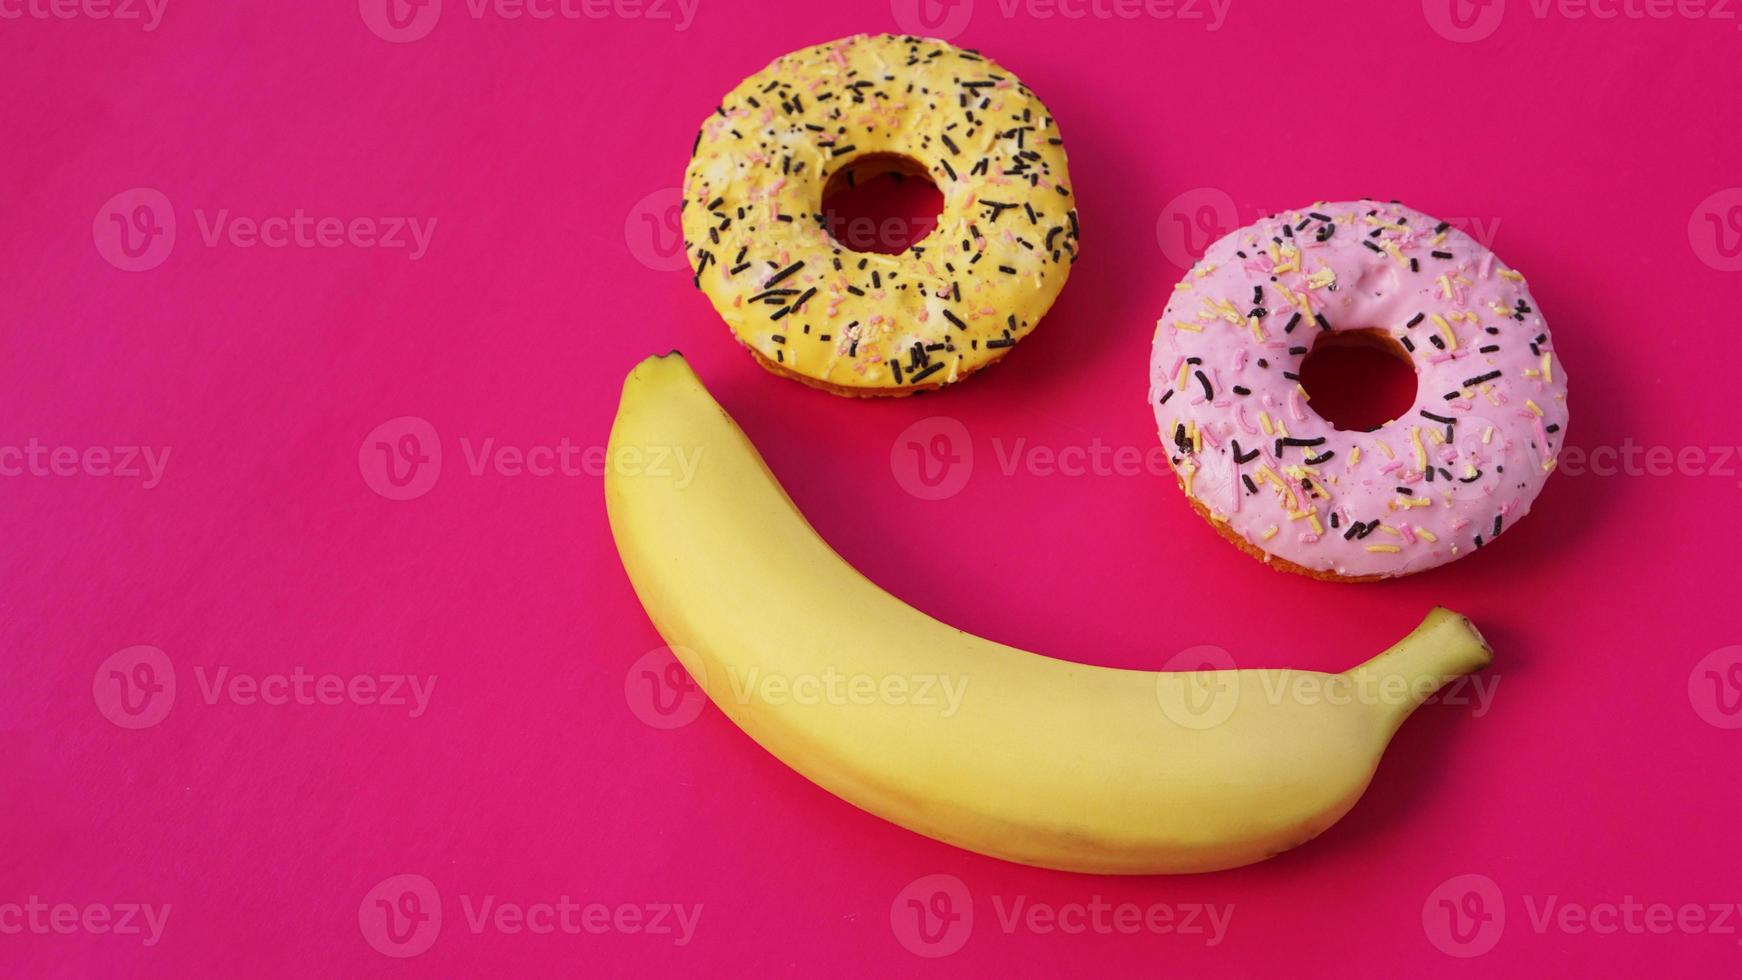 deux beignets et une banane se trouvent sur une surface rose, formant une émotion de sourire photo